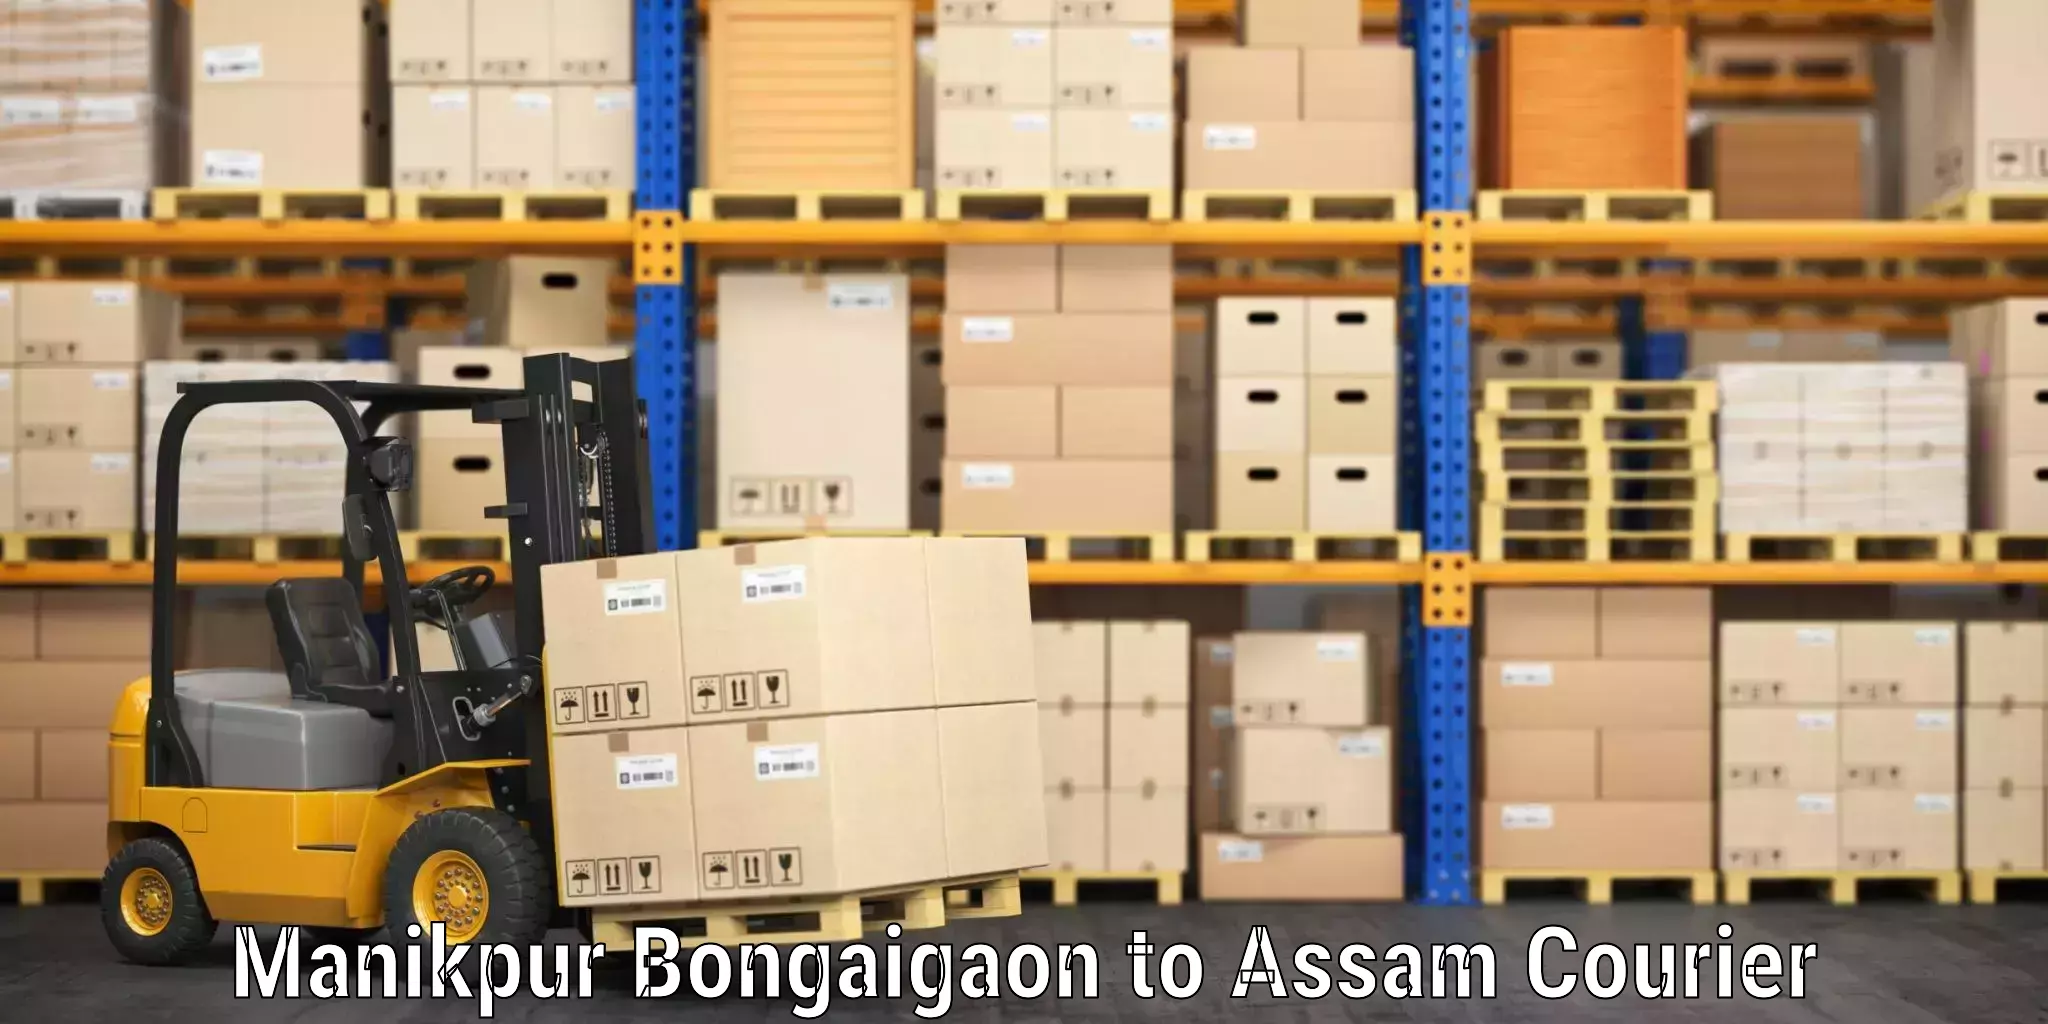 Luggage transport schedule Manikpur Bongaigaon to Baksha Bodoland